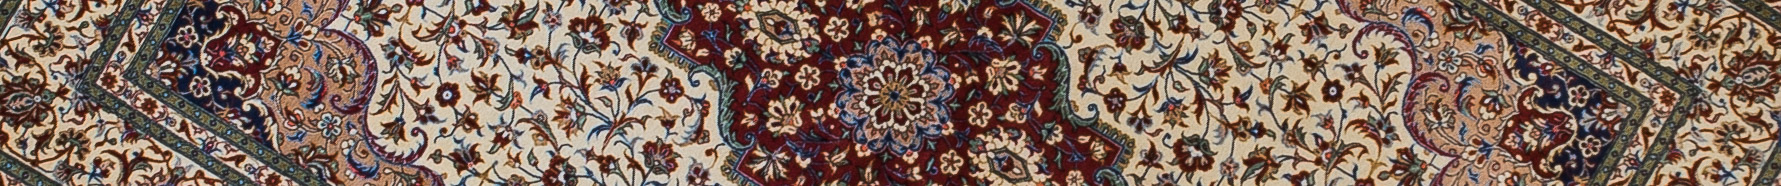 Qom Persian Carpet Rug N1Carpet Canada Montreal Tapis Persan 3900